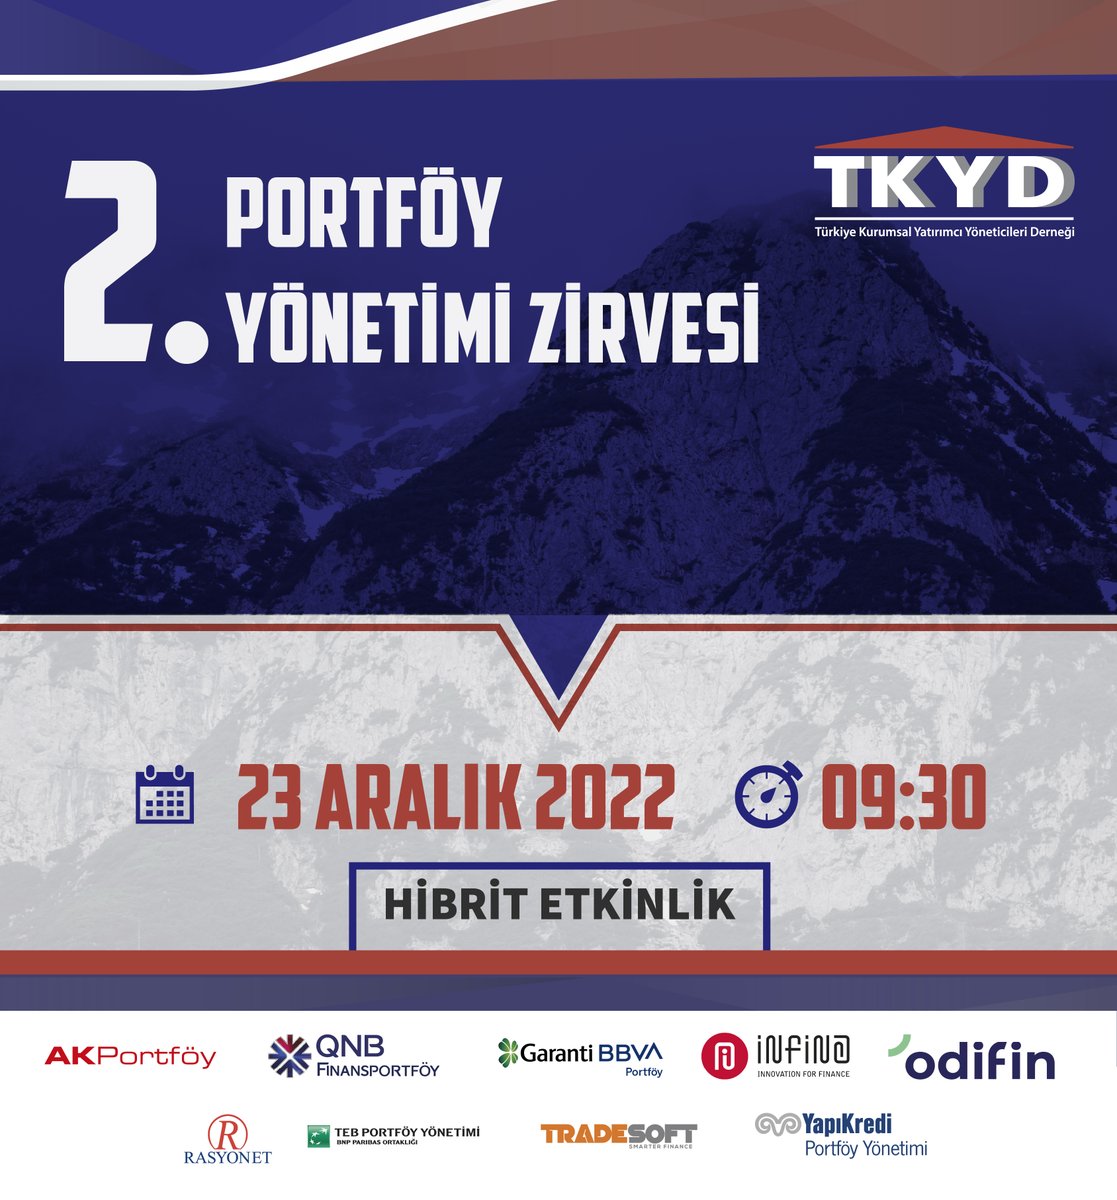 23 Aralık 2023'te gerçekleşecek TKYD 2.Portföy Yönetimi Zirvesi'ni Youtube kanalımızdan youtube.com/@turkiyekurums… ve etkinlik websitemizden portfoyyonetimizirvesi.com canlı olarak izleyebilirsiniz.